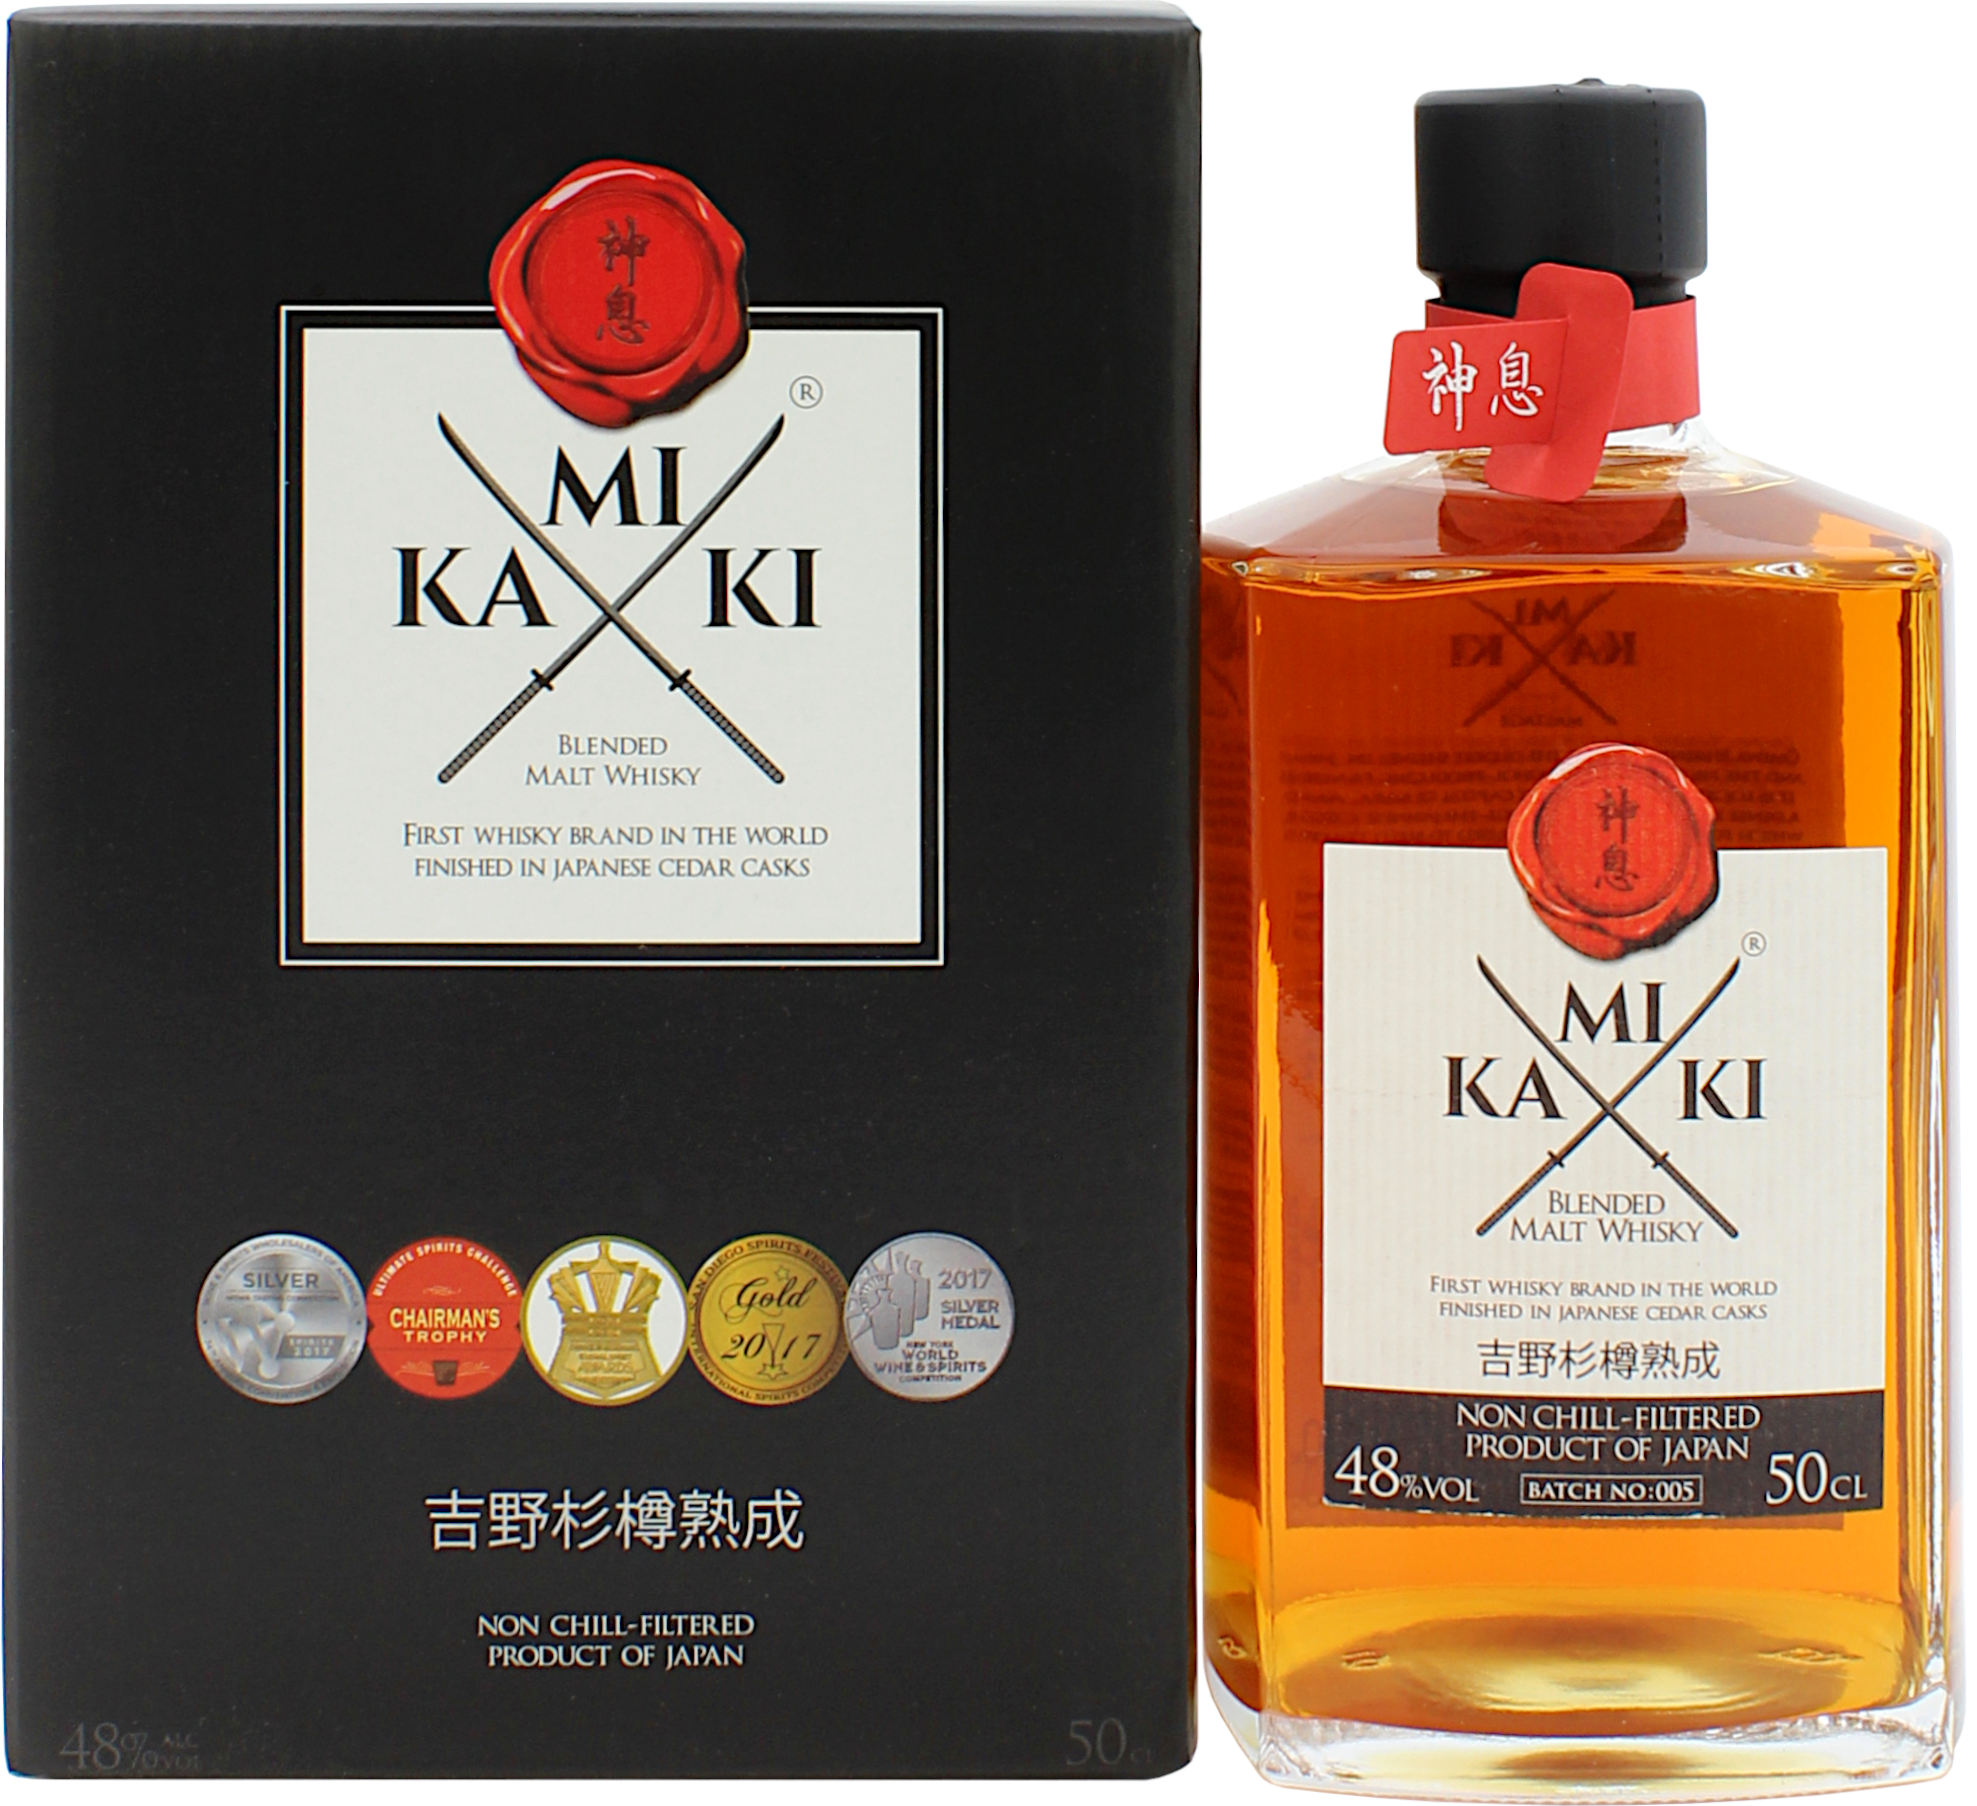 Kamiki Blended Malt Whisky (Japan) 48.0% 0,5l